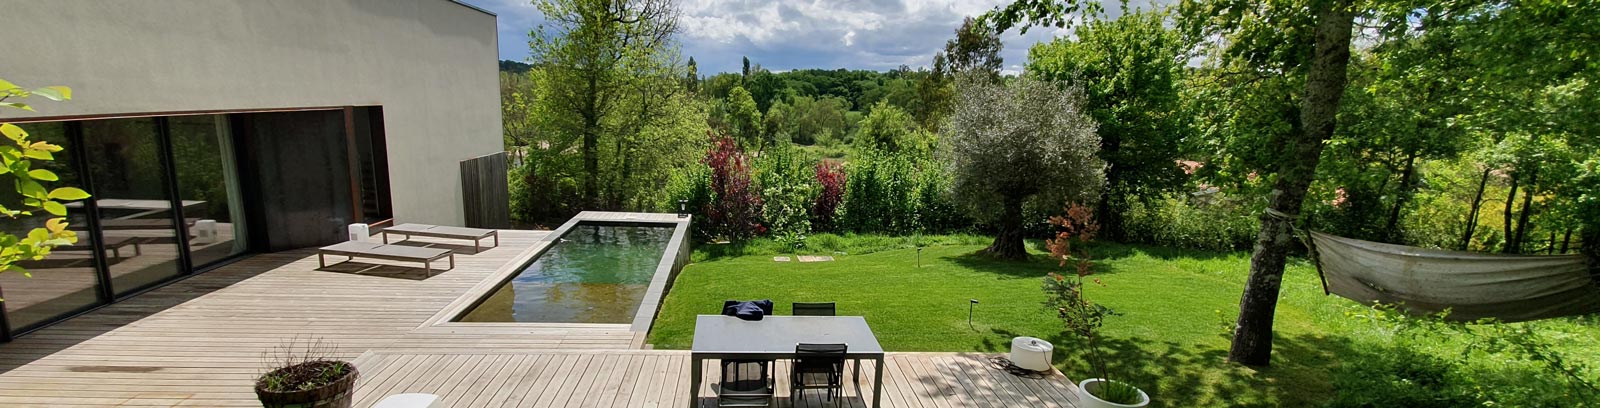 Terrasse en bois avec piscine sur un terrain en pente réalisée par Créateck Paysage